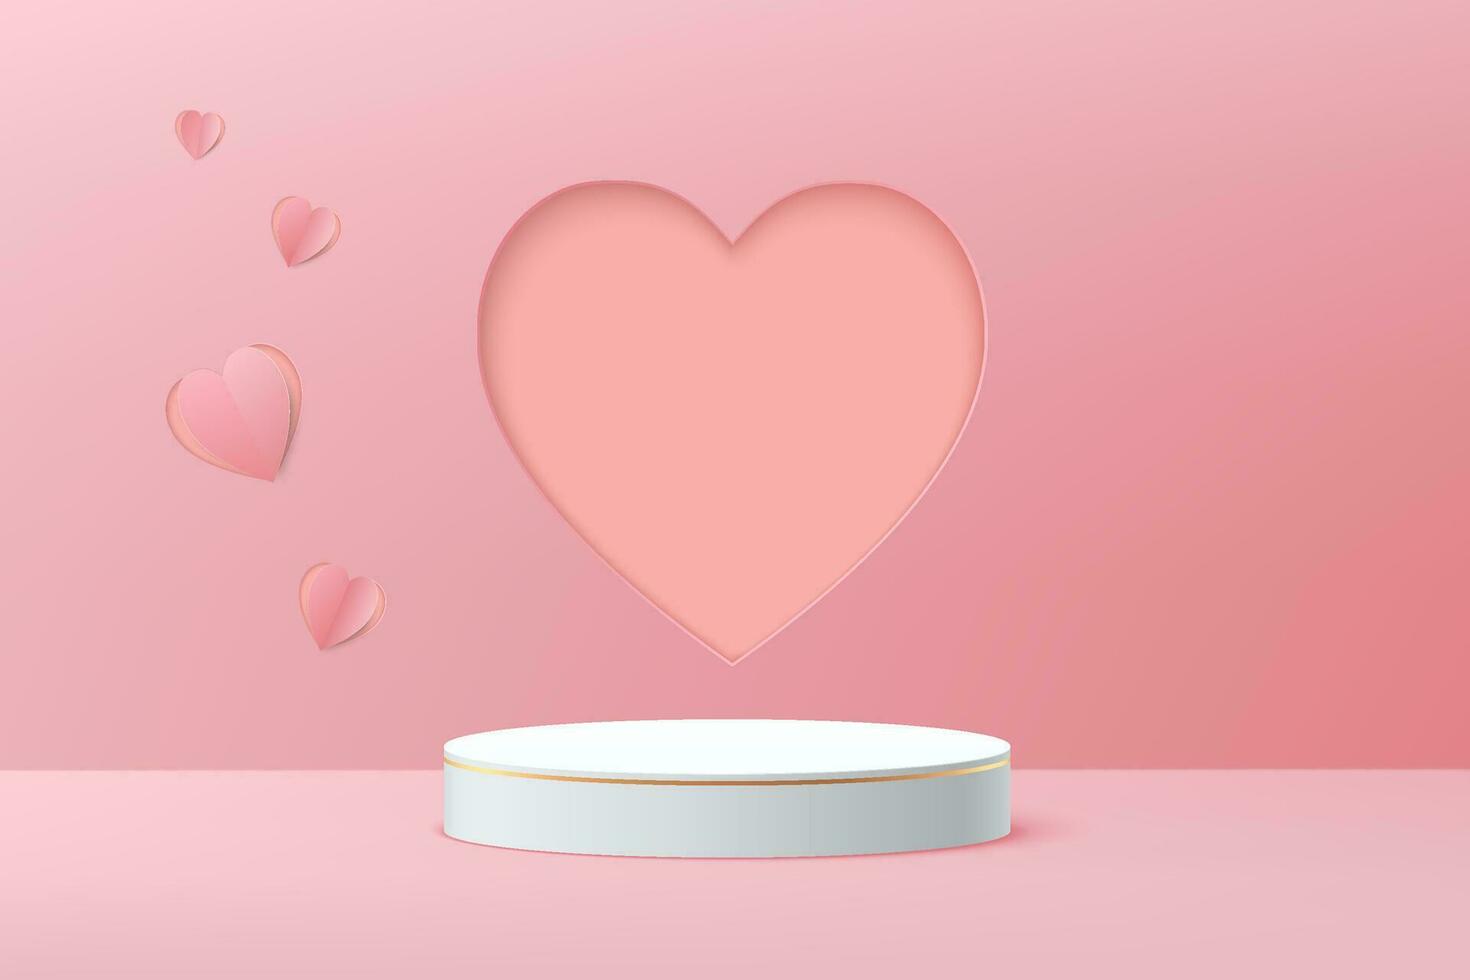 realistisch podium wit 3d cilinder voetstuk met roze hart peper besnoeiing vorm achtergrond. Valentijn minimaal tafereel voor producten vitrine, Promotie Scherm. vector abstract studio kamer platform ontwerp.